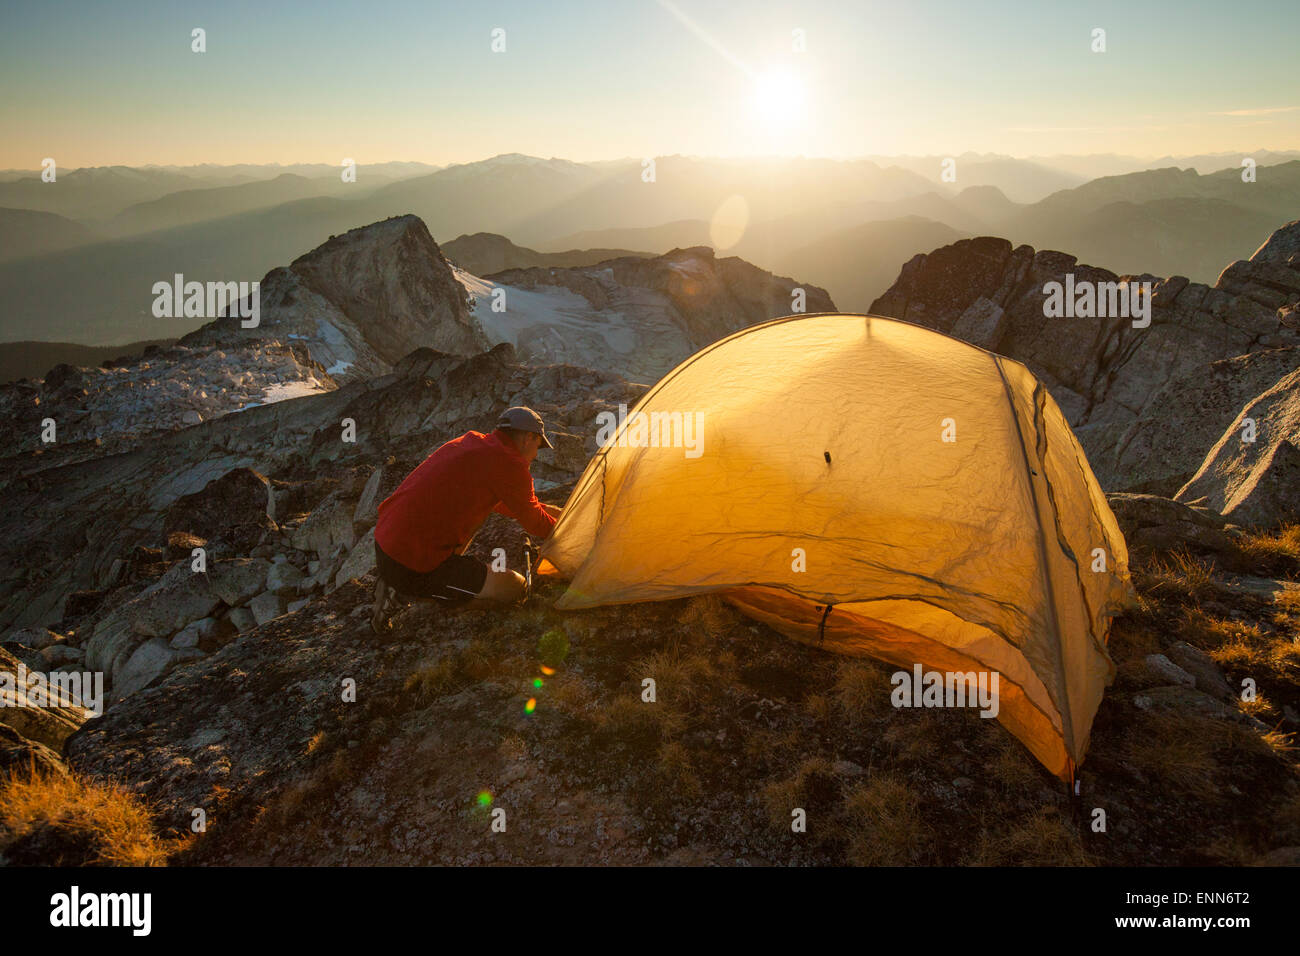 Un randonneur met en place une tente sur le sommet du pic de saxifrage, Pemberton, Canada. Banque D'Images